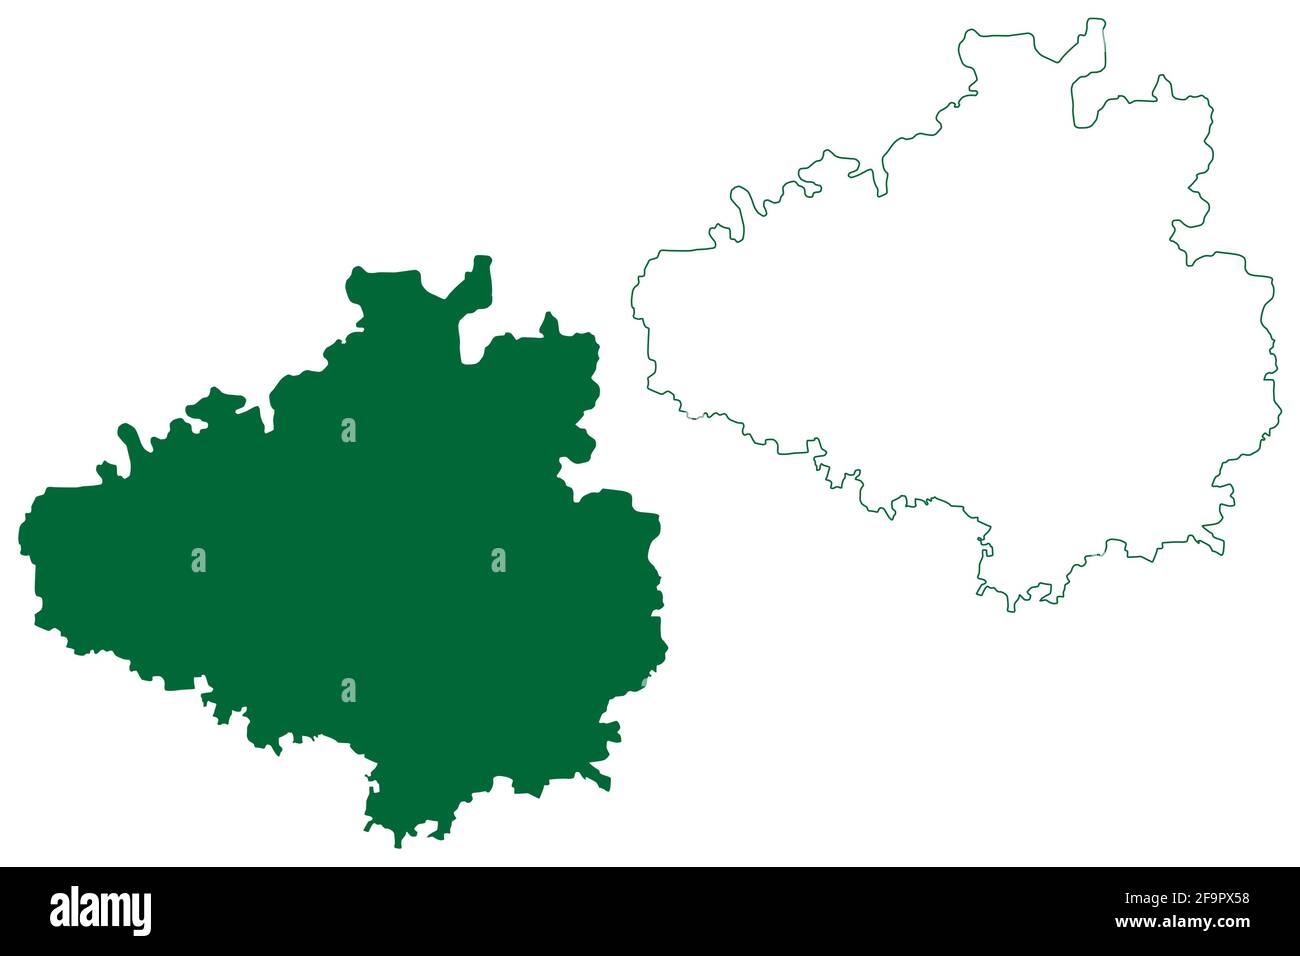 Distretto di Chikkaballapura (Stato di Karnataka, Repubblica dell'India, divisione di Bangalore) illustrazione vettoriale della mappa, schizzo della mappa di Chikkaballapura Illustrazione Vettoriale